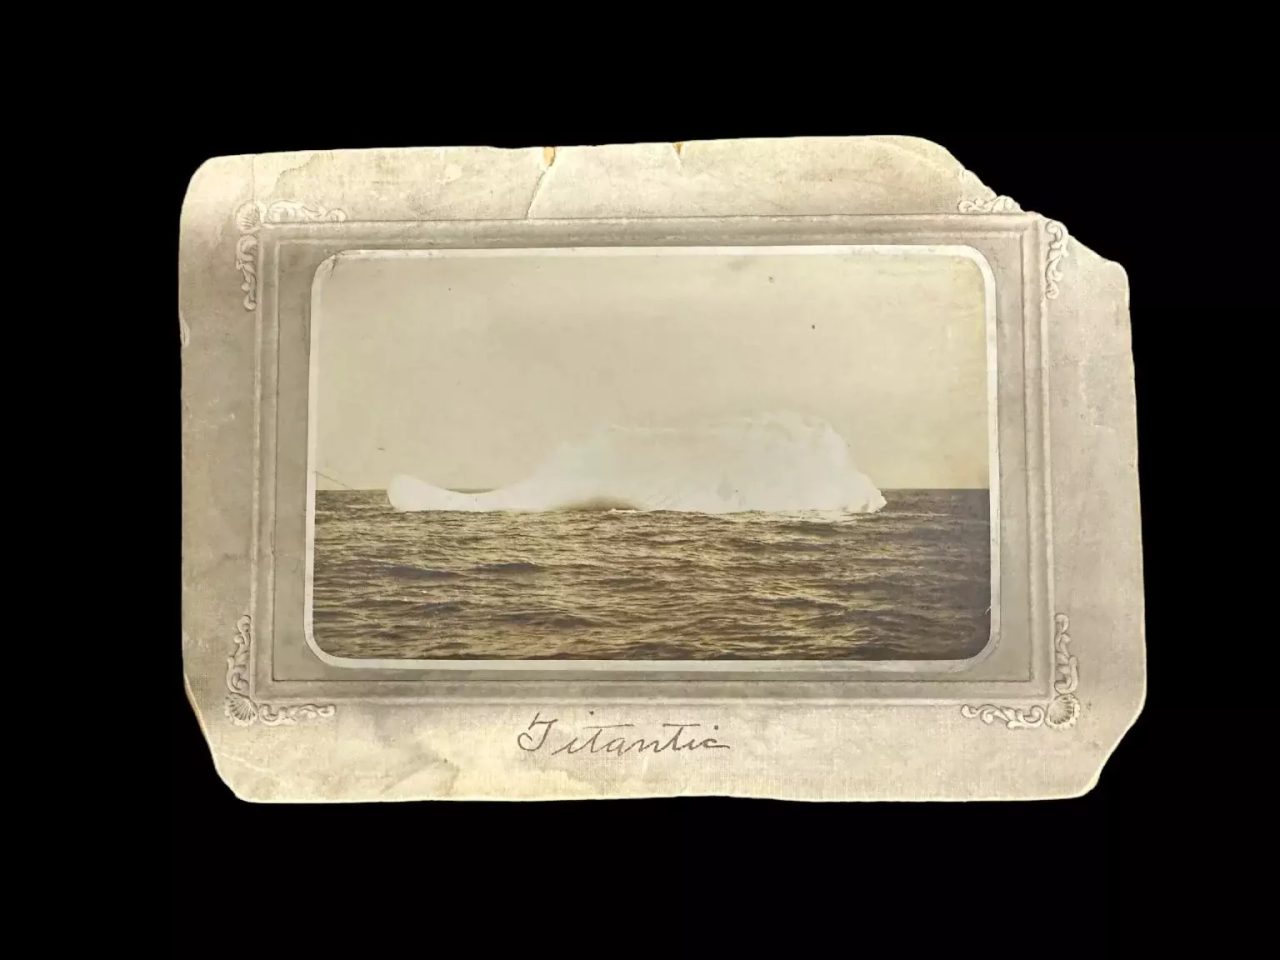 Φωτογραφία που απεικονίζει παγόβουνο, το οποίο είναι πιθανόν να ευθυνόταν για το ναυάγιο του Τιτανικού